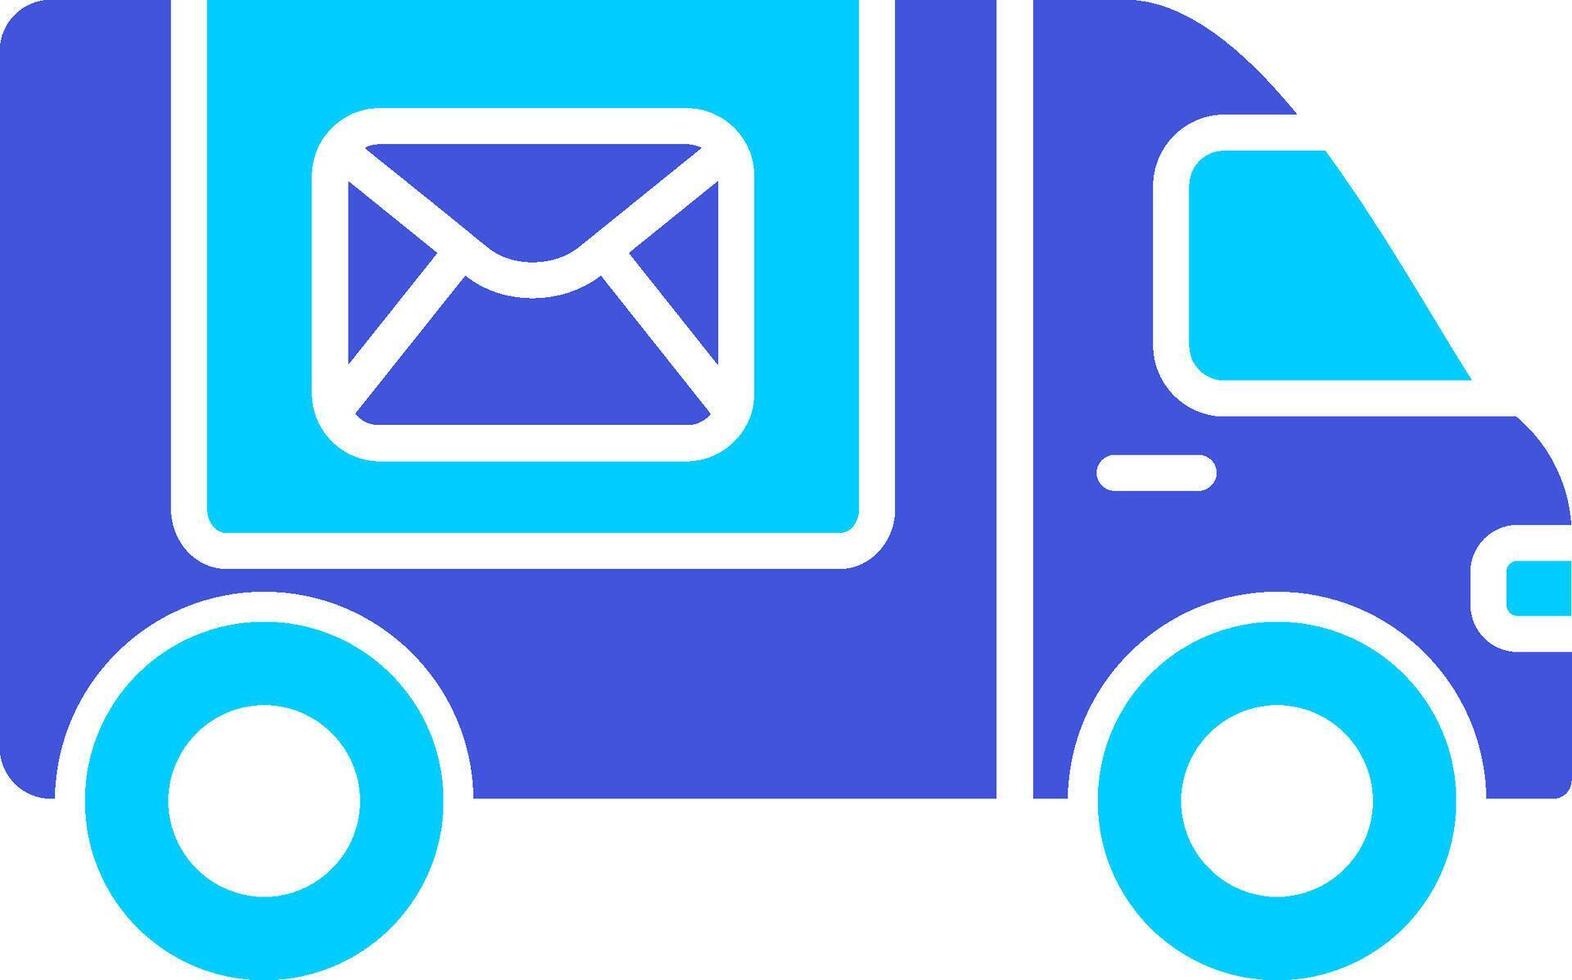 Postal Delivery Vecto Icon vector